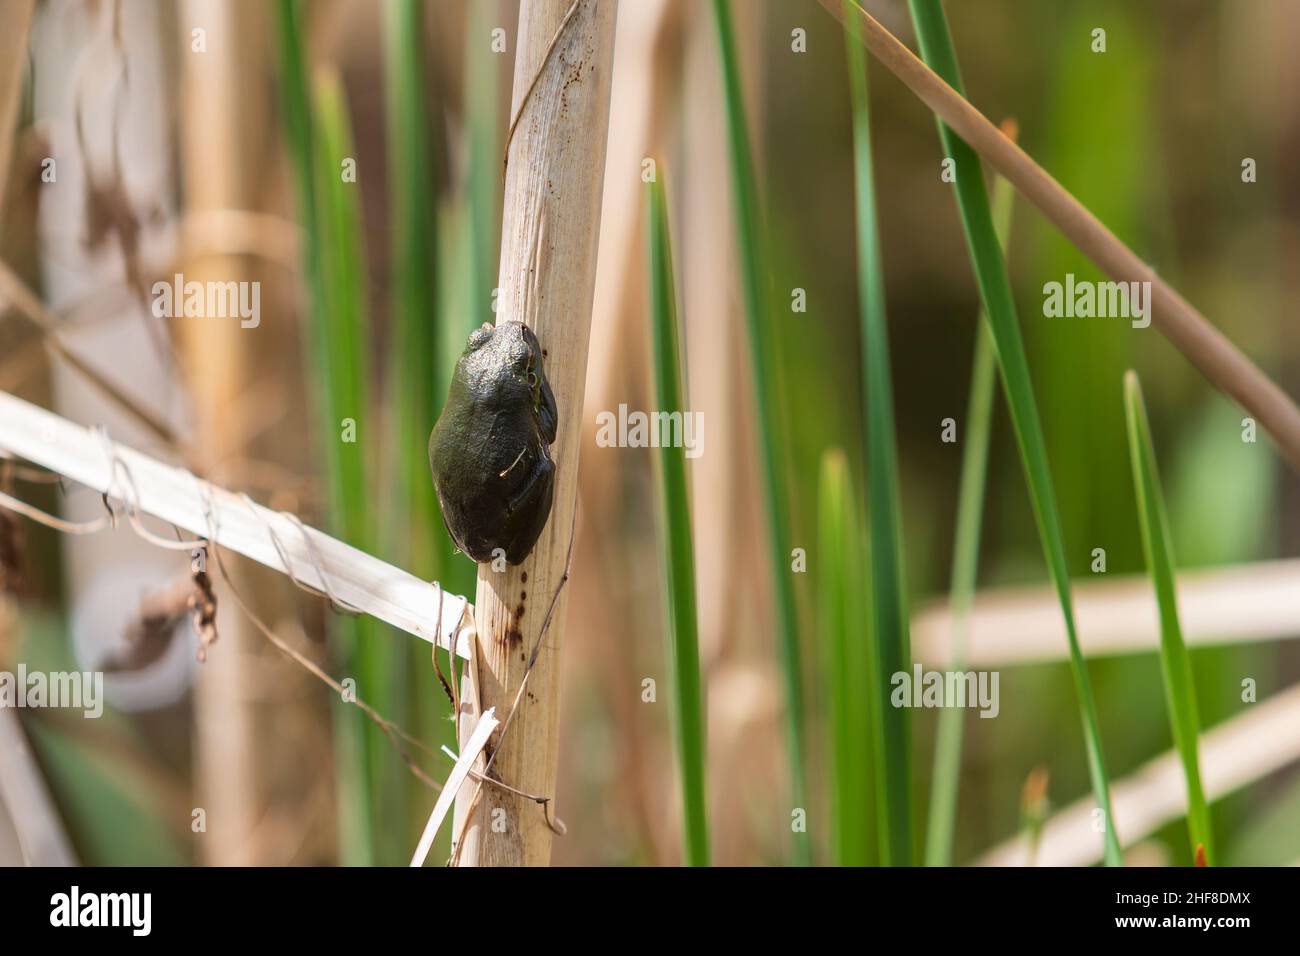 Der grüne Baumfrosch - Hyla arborea - sitzt auf einem Schilf in einem Teich in seinem natürlichen Lebensraum. Foto der wilden Natur. Stockfoto